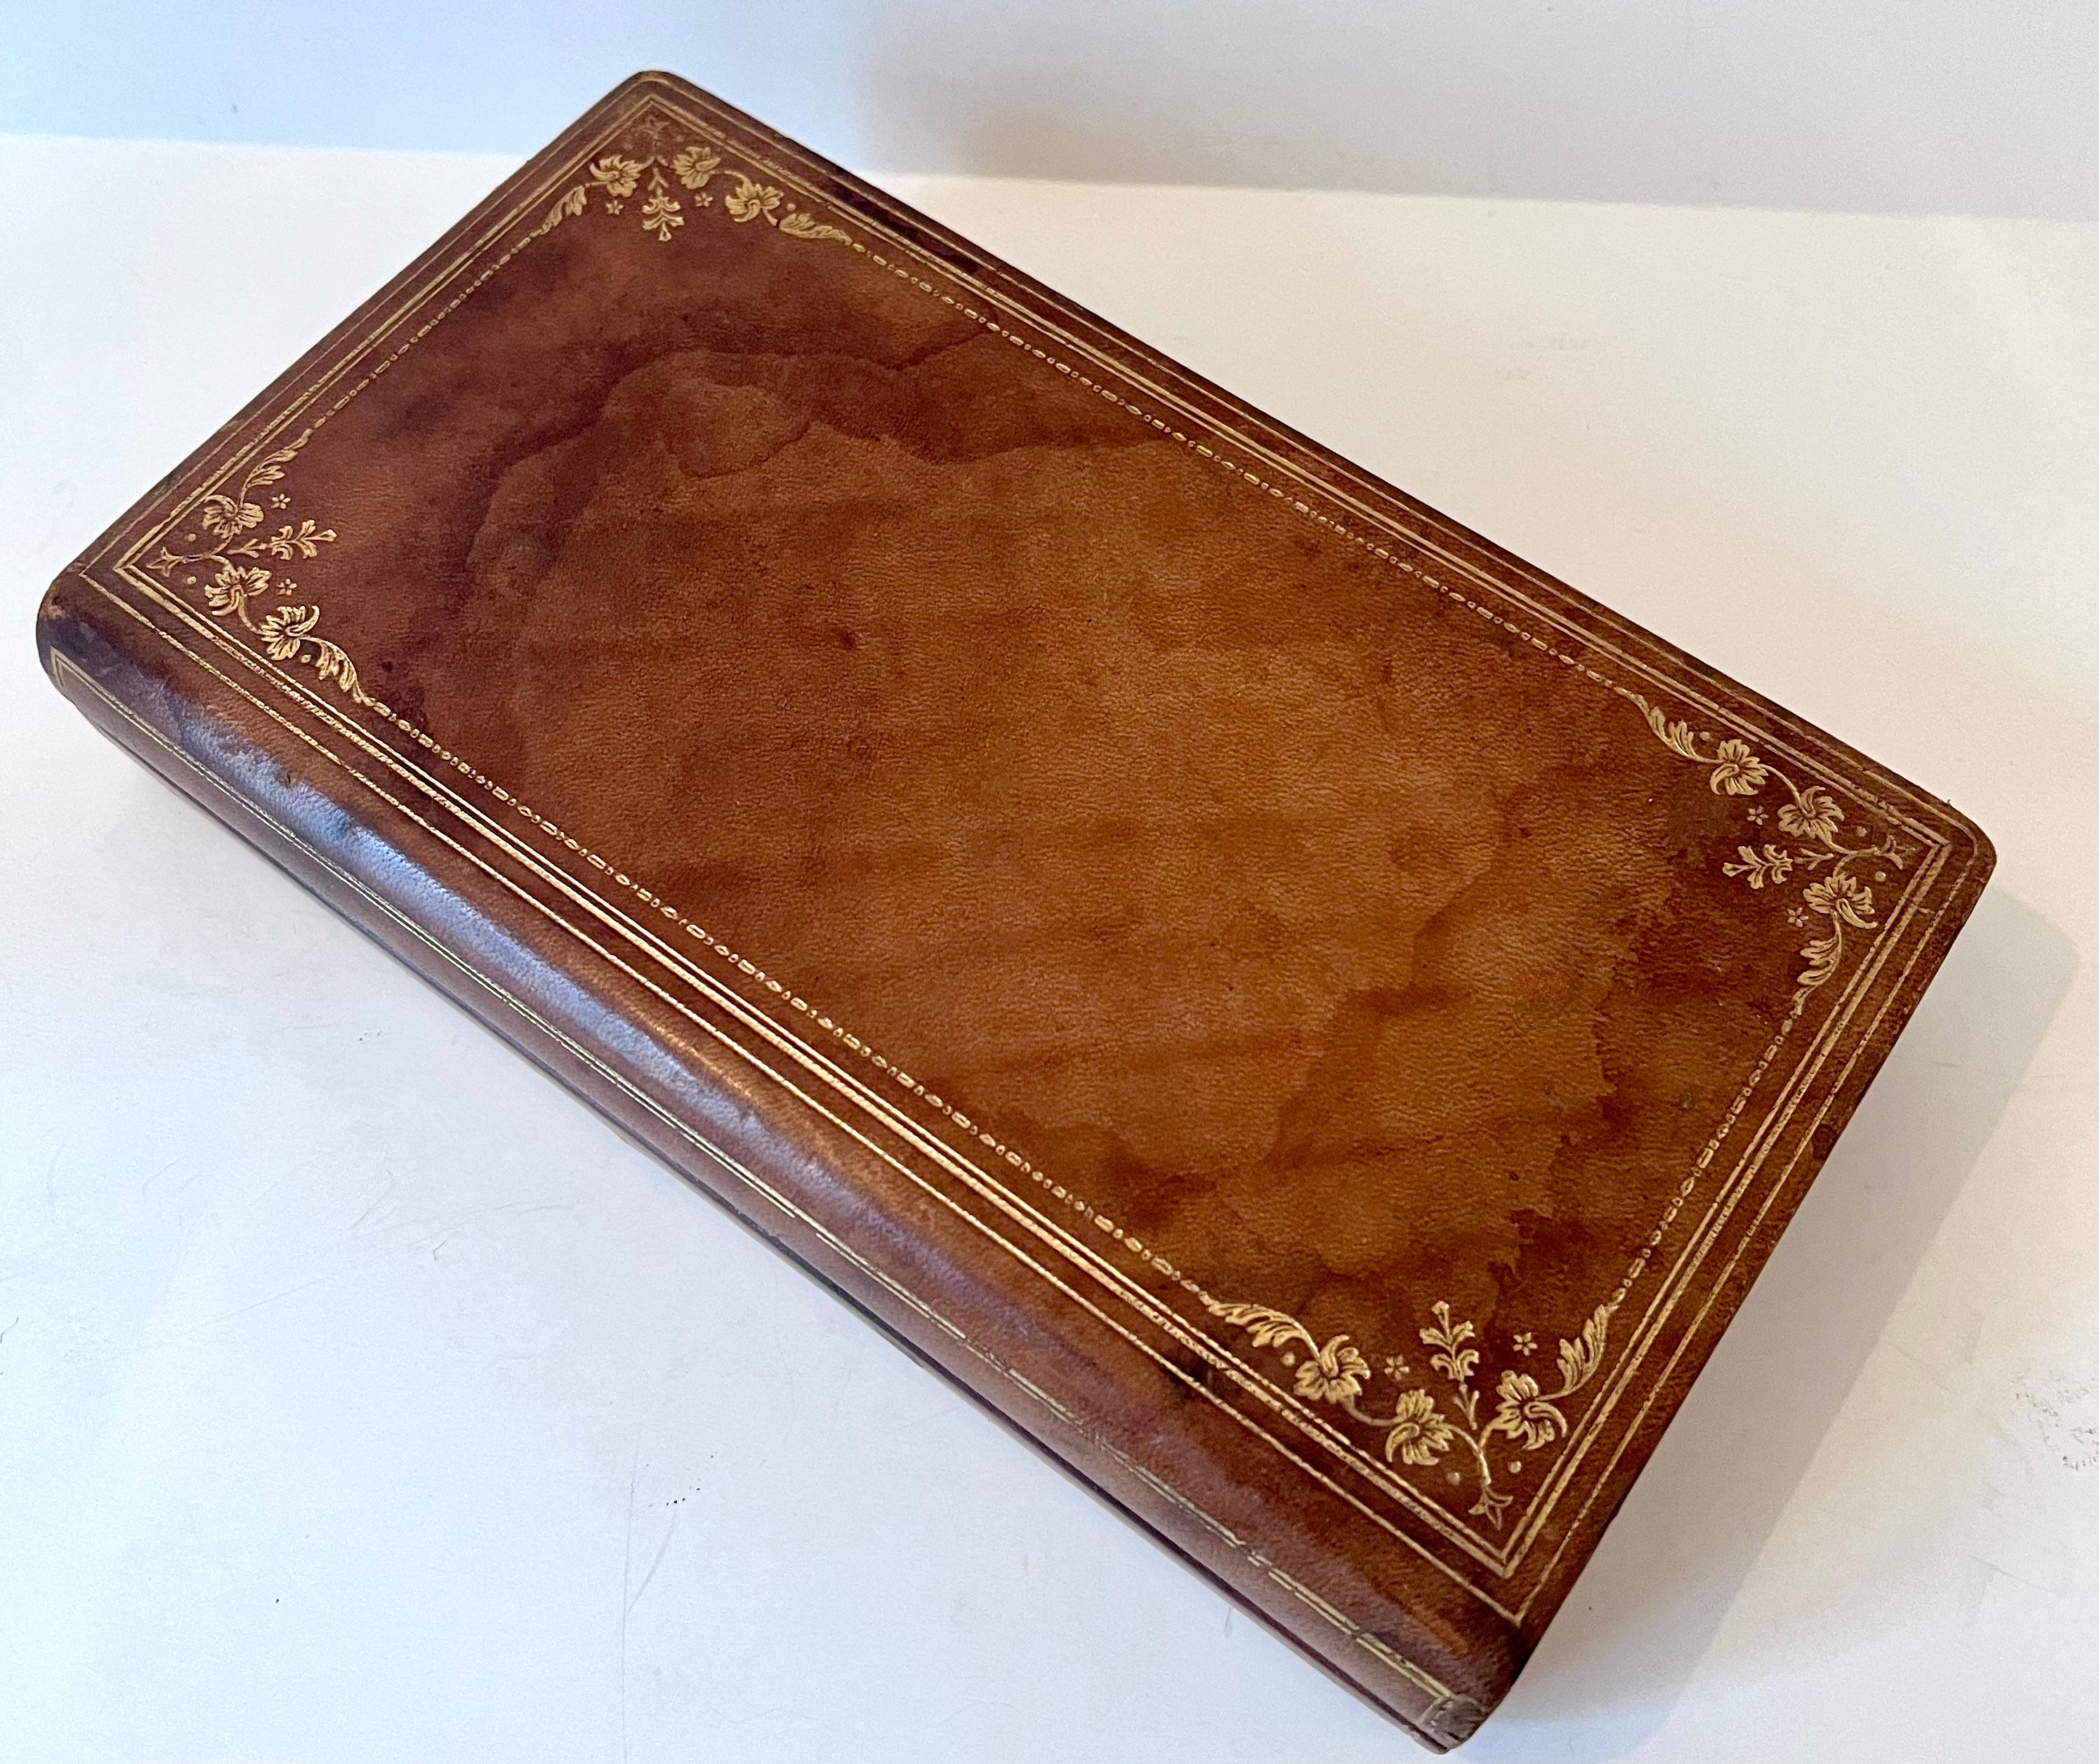 L'aspect d'un livre relié en cuir avec une fine dorure à l'extérieur. Utilisé à l'origine pour la carte de score de bridge et les cartes à jouer (incluses). Cette pièce complète une bibliothèque, une table d'appoint, un bureau ou un espace de